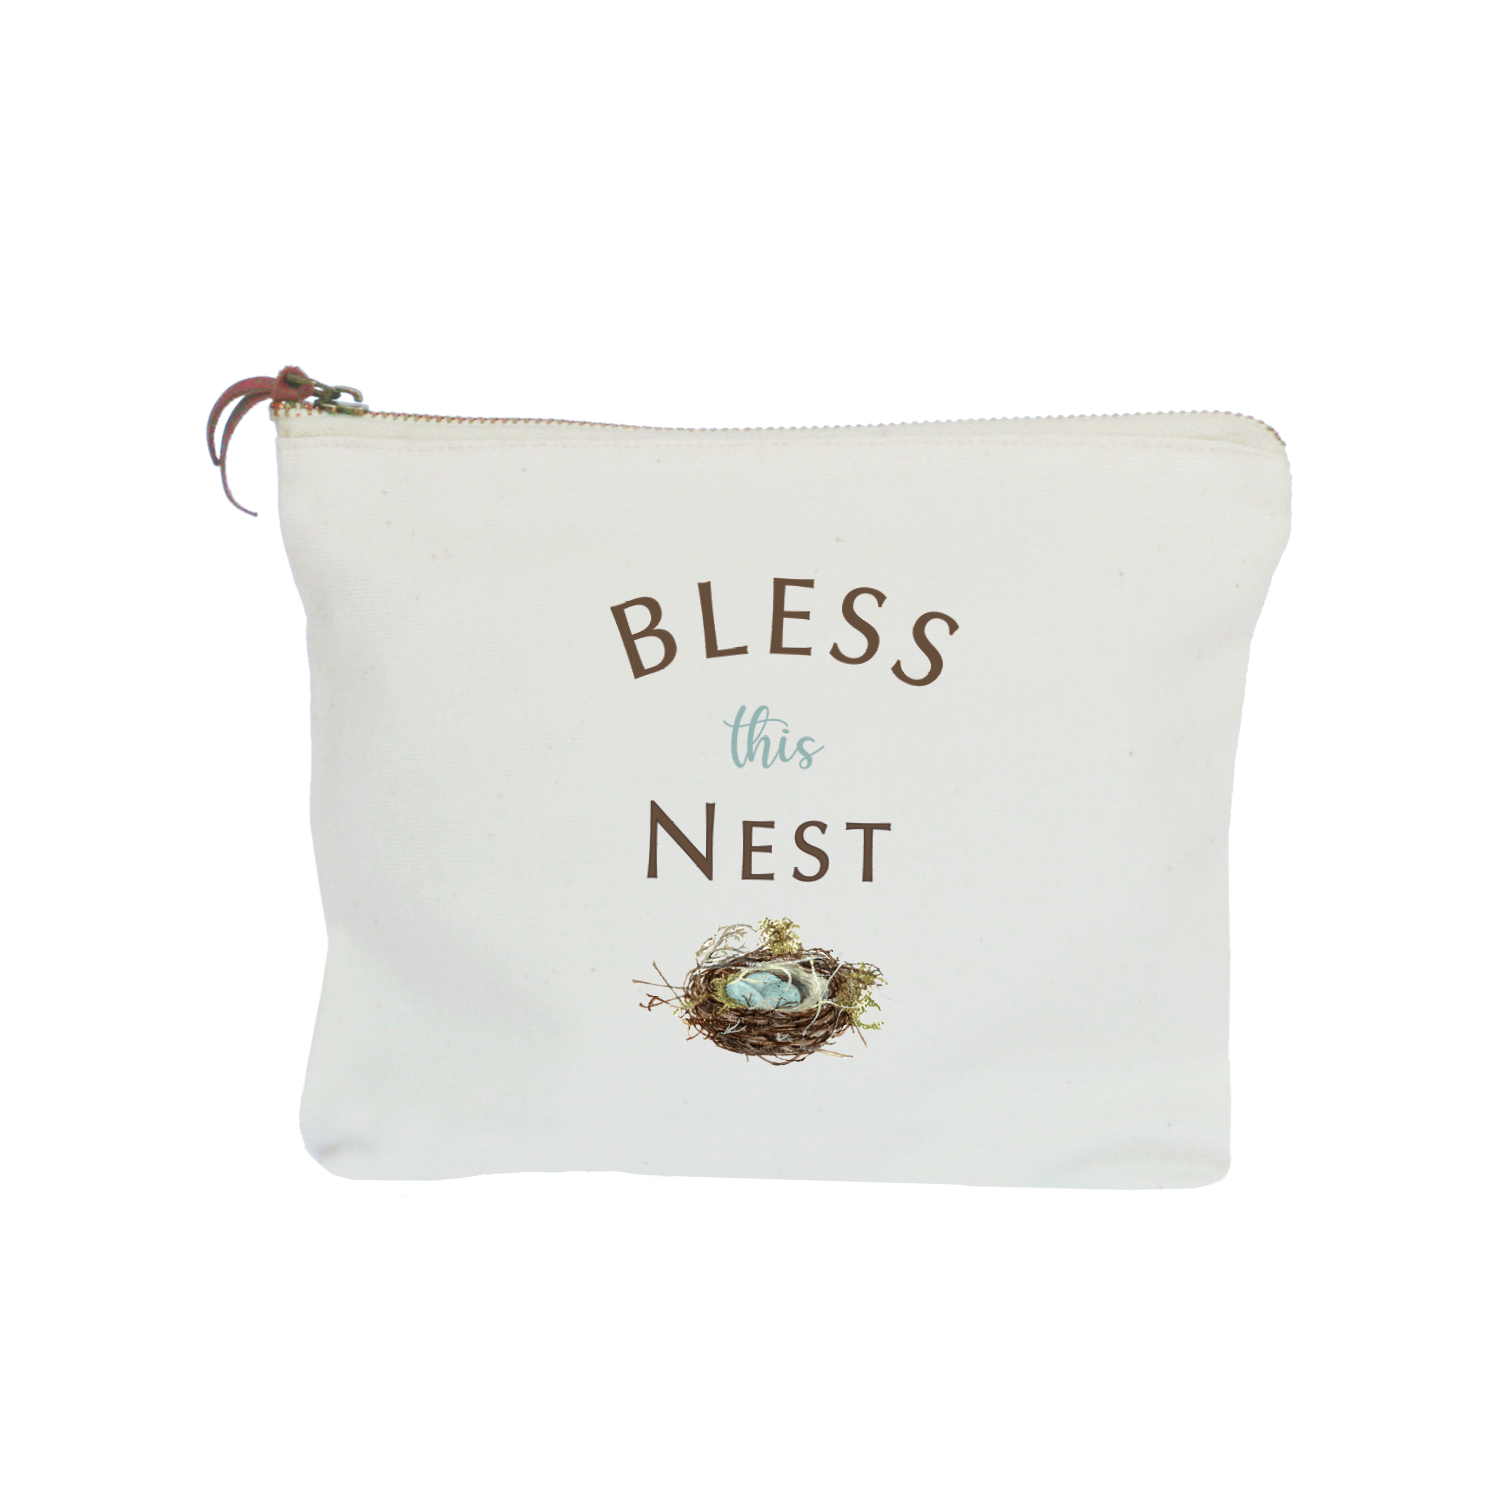 bless this nest zipper pouch